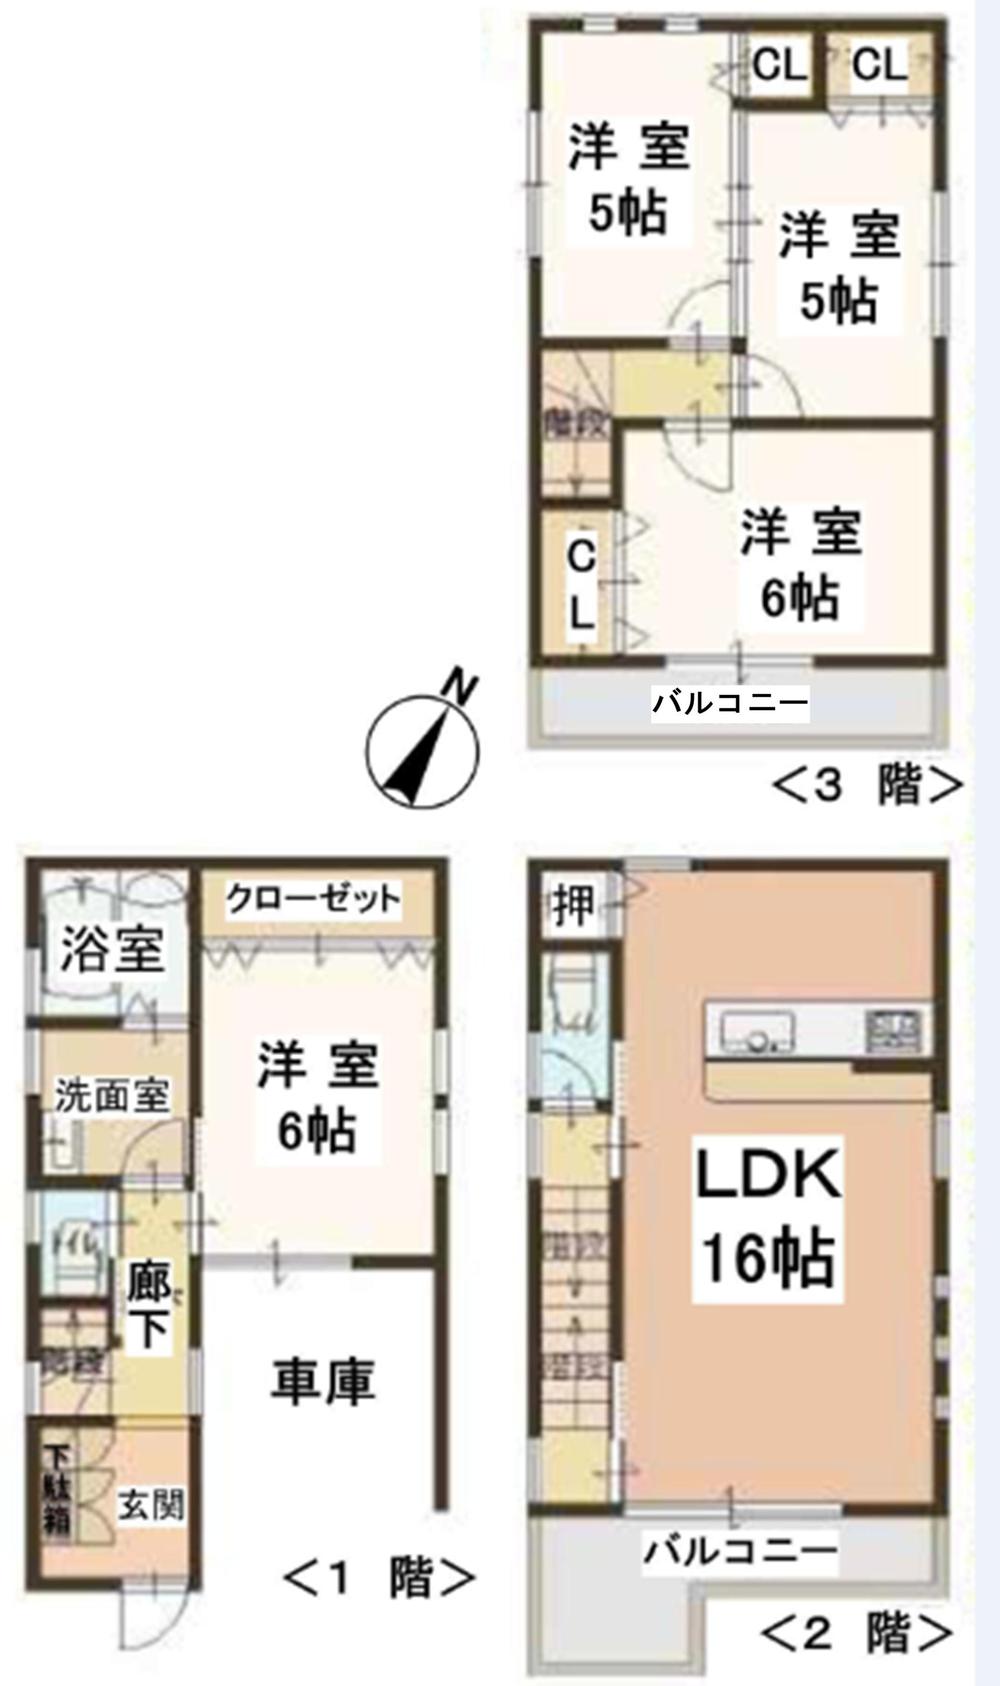 Floor plan. 23.8 million yen, 4LDK, Land area 57.09 sq m , Building area 57.09 sq m